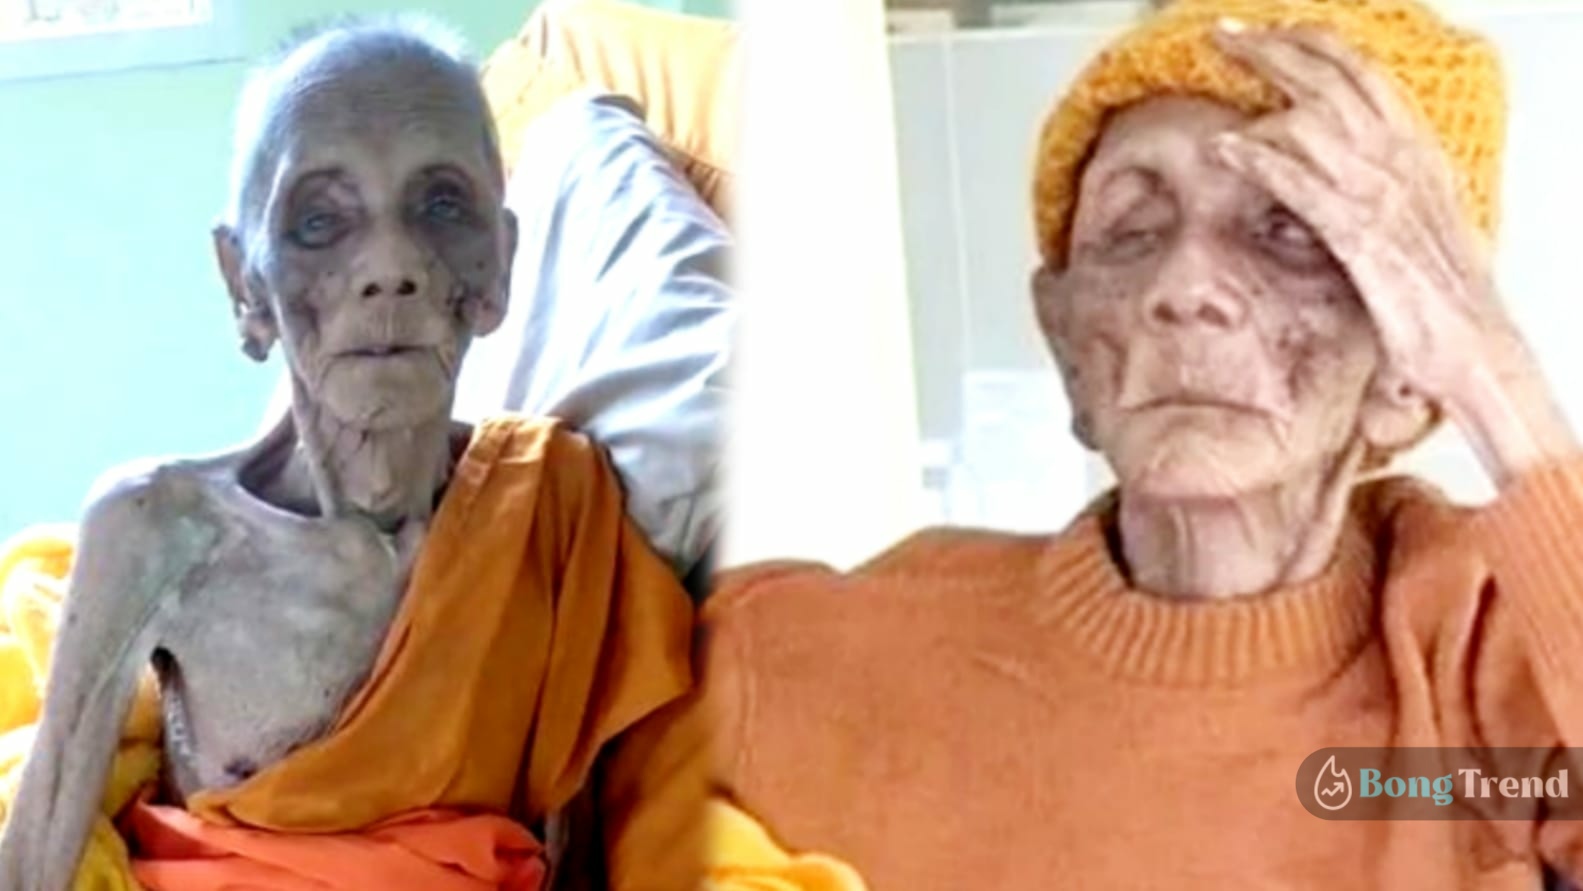 সোশ্যাল মিডিয়া,Social Media,ভাইরাল ছবি,Viral Photo,সবচেয়ে বয়স্ক মহিলা,Oldest Woman,৩৯৯ বছরে জীবিত,Alive 399 Year